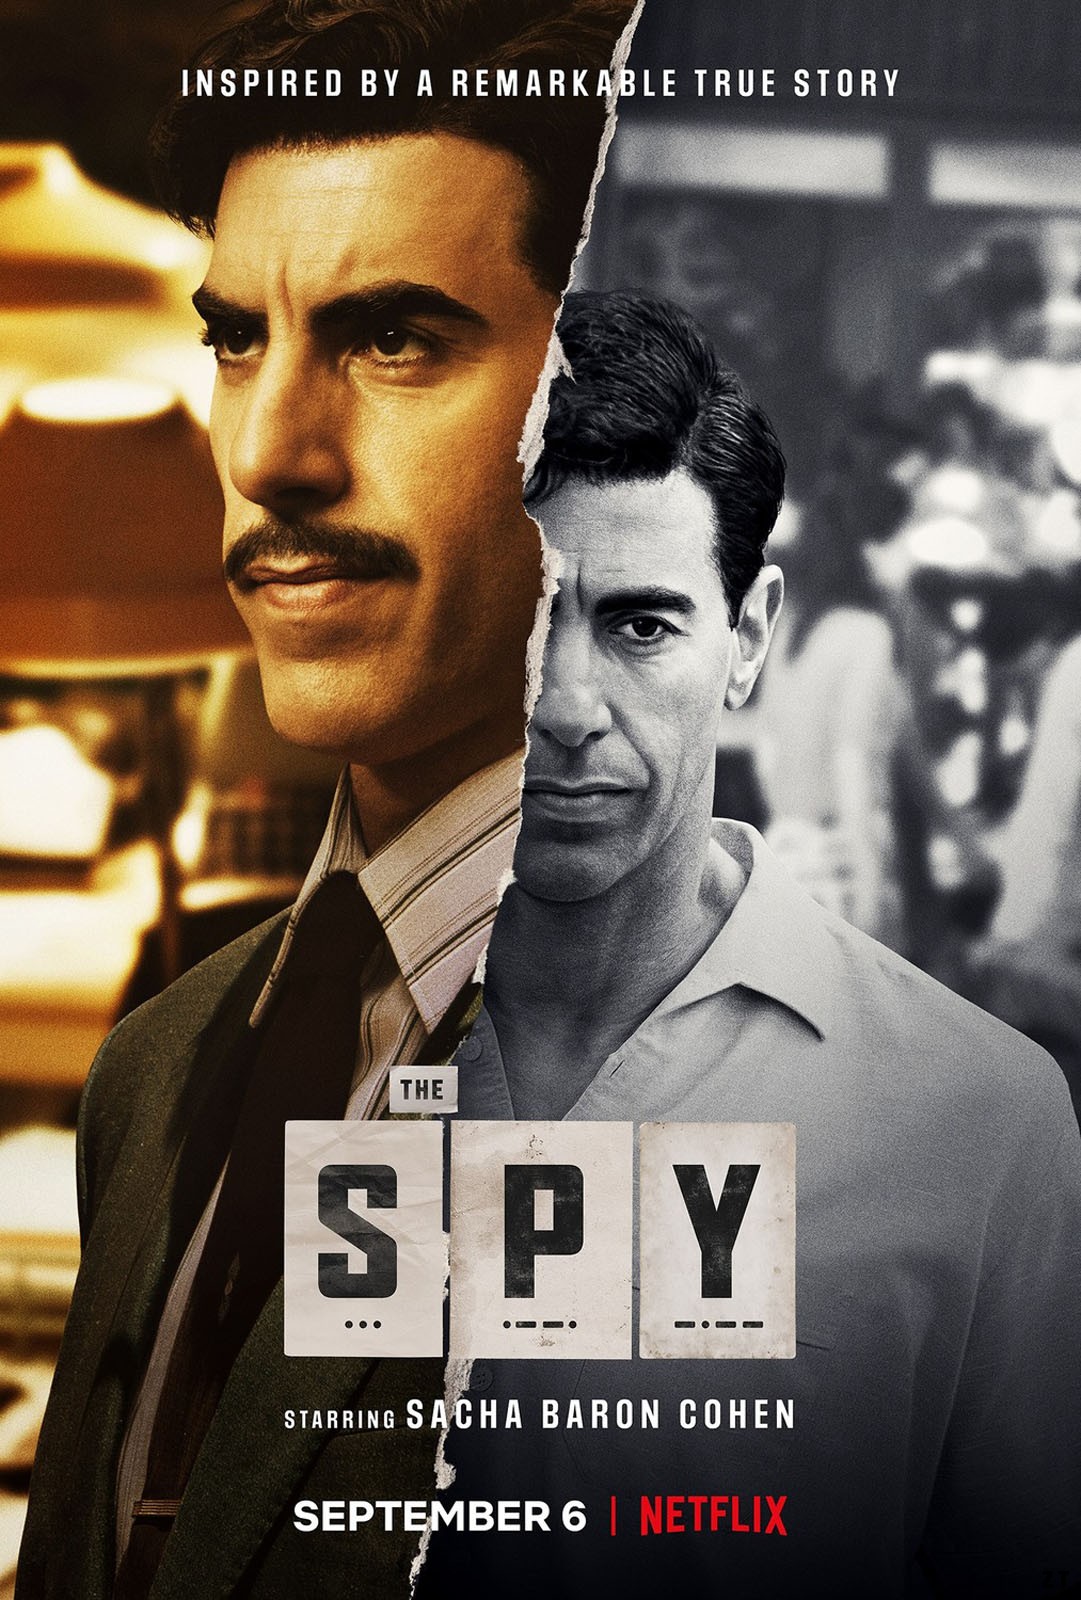 The Spy S01E02 VOSTFR HDTV